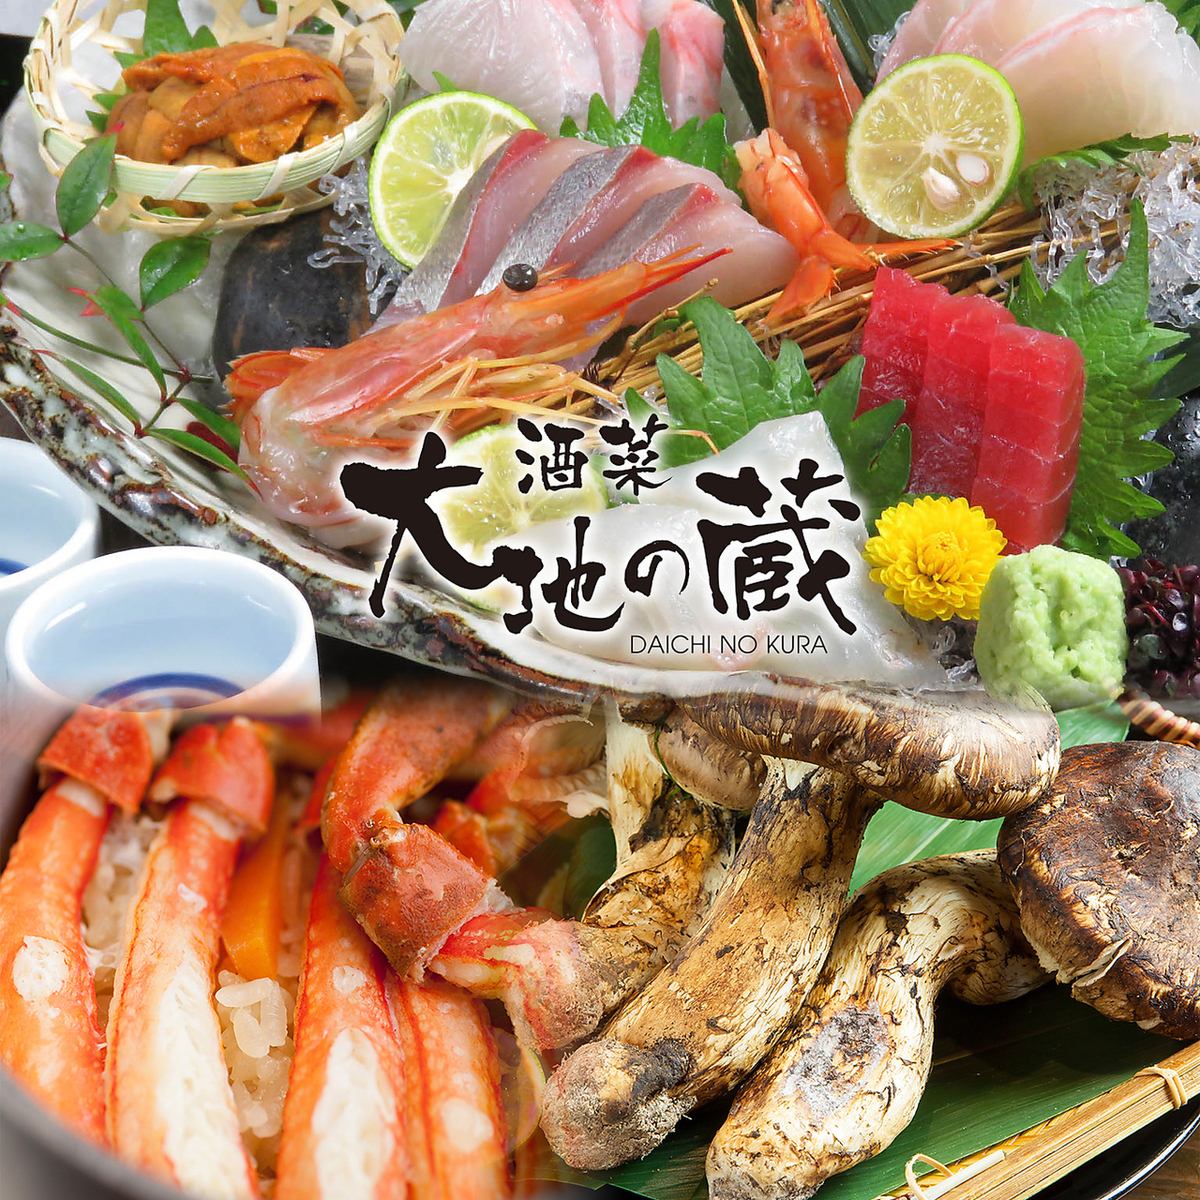 您可以直接前往当地Maizuru的渔港享用时令食材和新鲜的海鲜菜肴。还接受各种宴会。